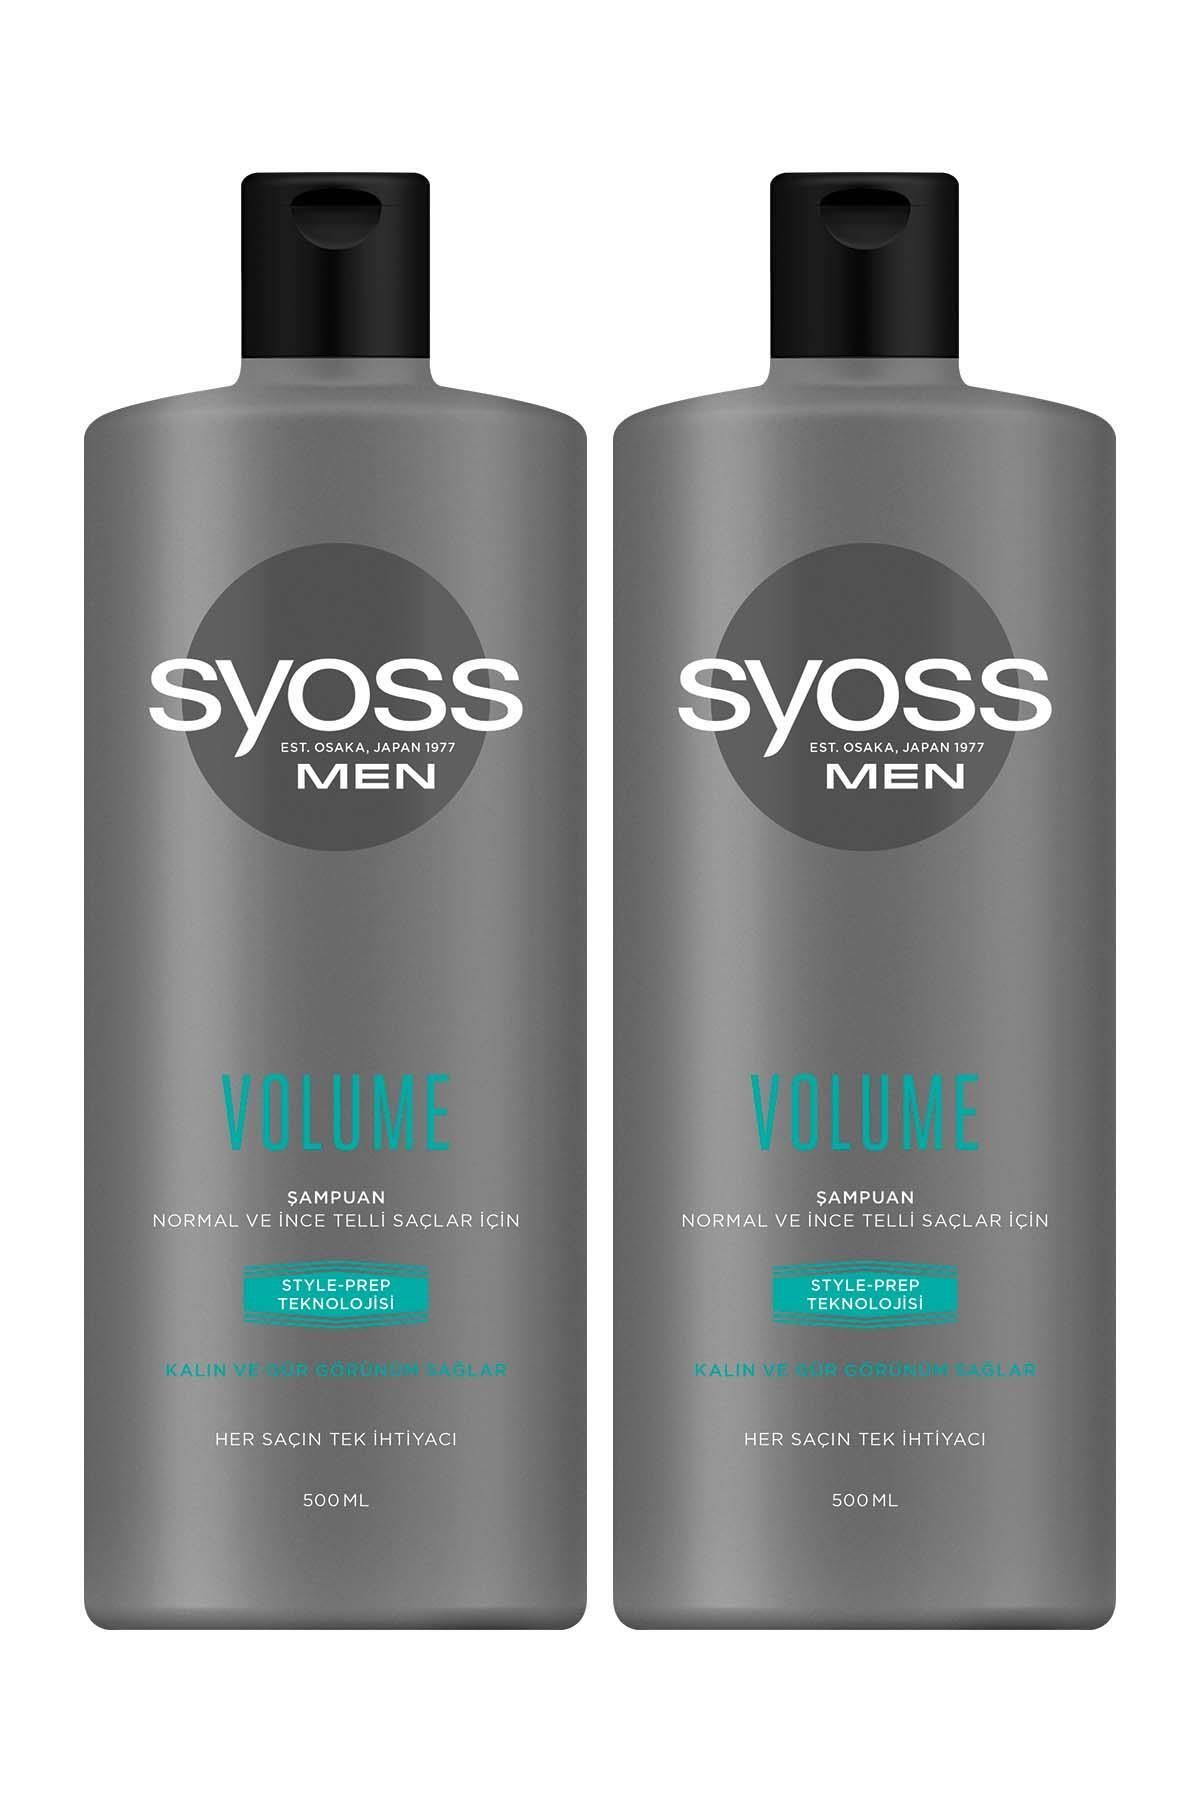 Syoss Men Volume Kalın Ve Gür Görünümlü Saçlar Şampuan 500 ml X 2 Adet